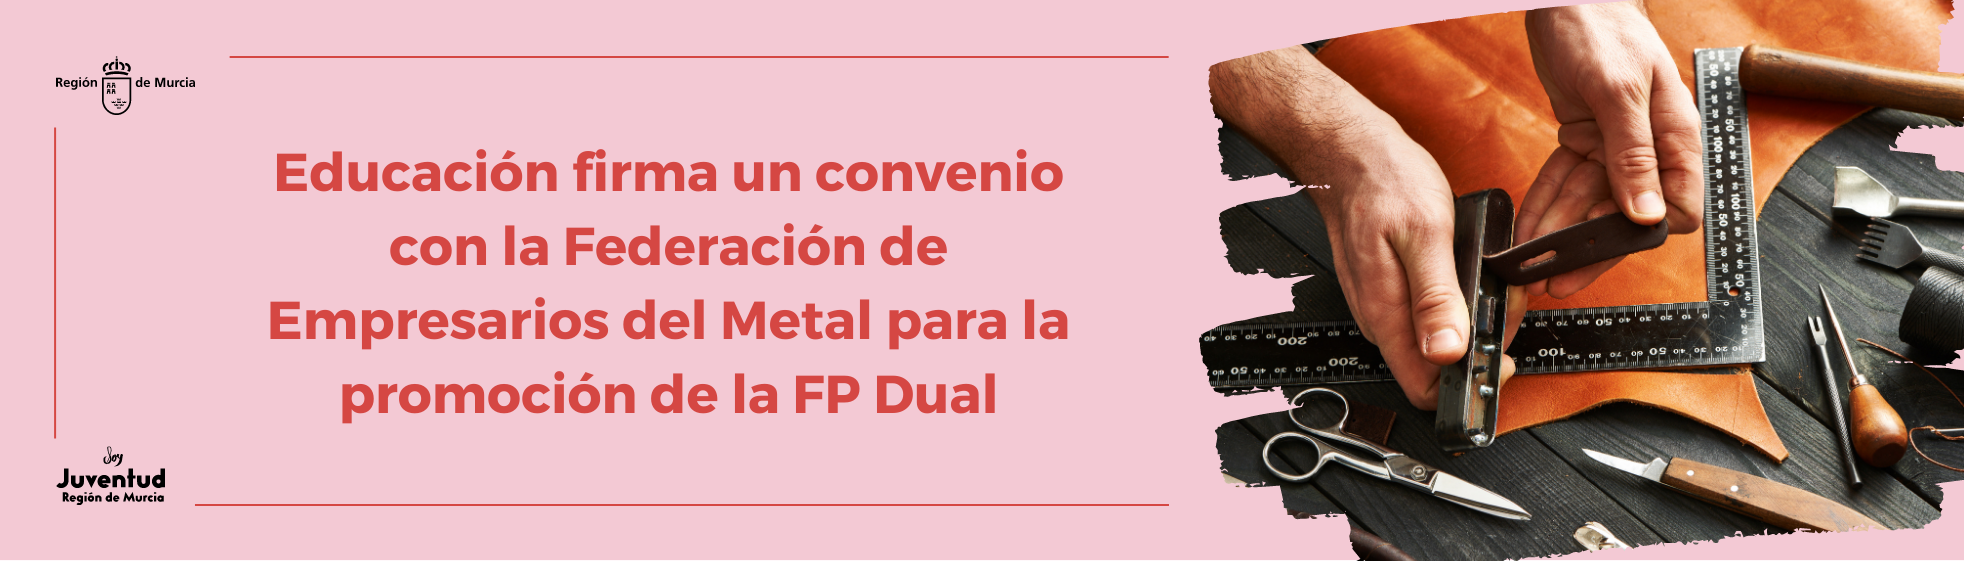 Educación firma un convenio con la Federación de Empresarios del Metal para la promoción de la FP Dual